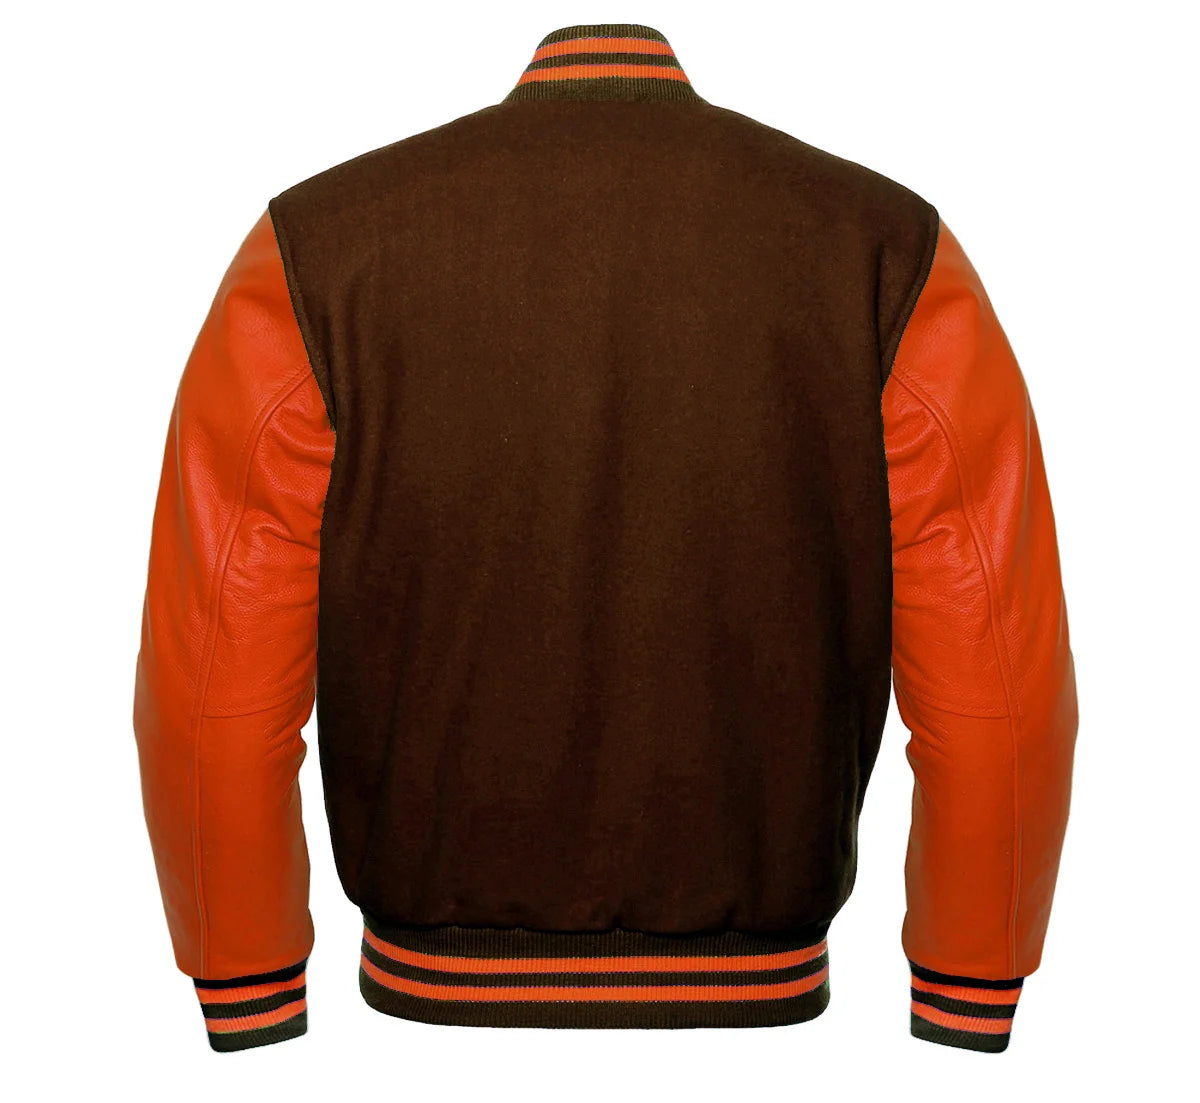 Orange and Brown Varsity Jacket